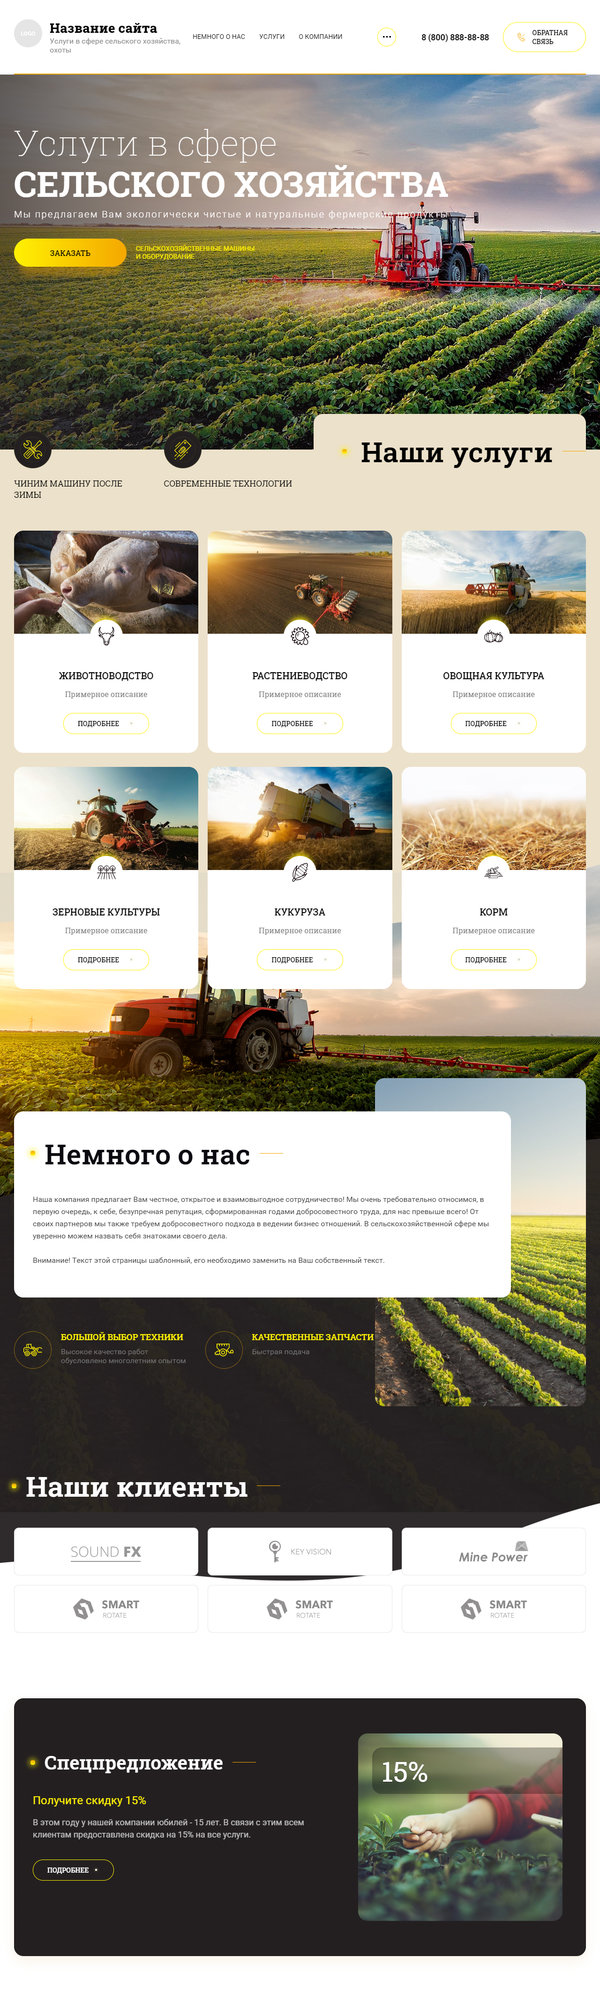 Готовый Сайт-Бизнес № 3084192 - Сельское хозяйство (Десктопная версия)